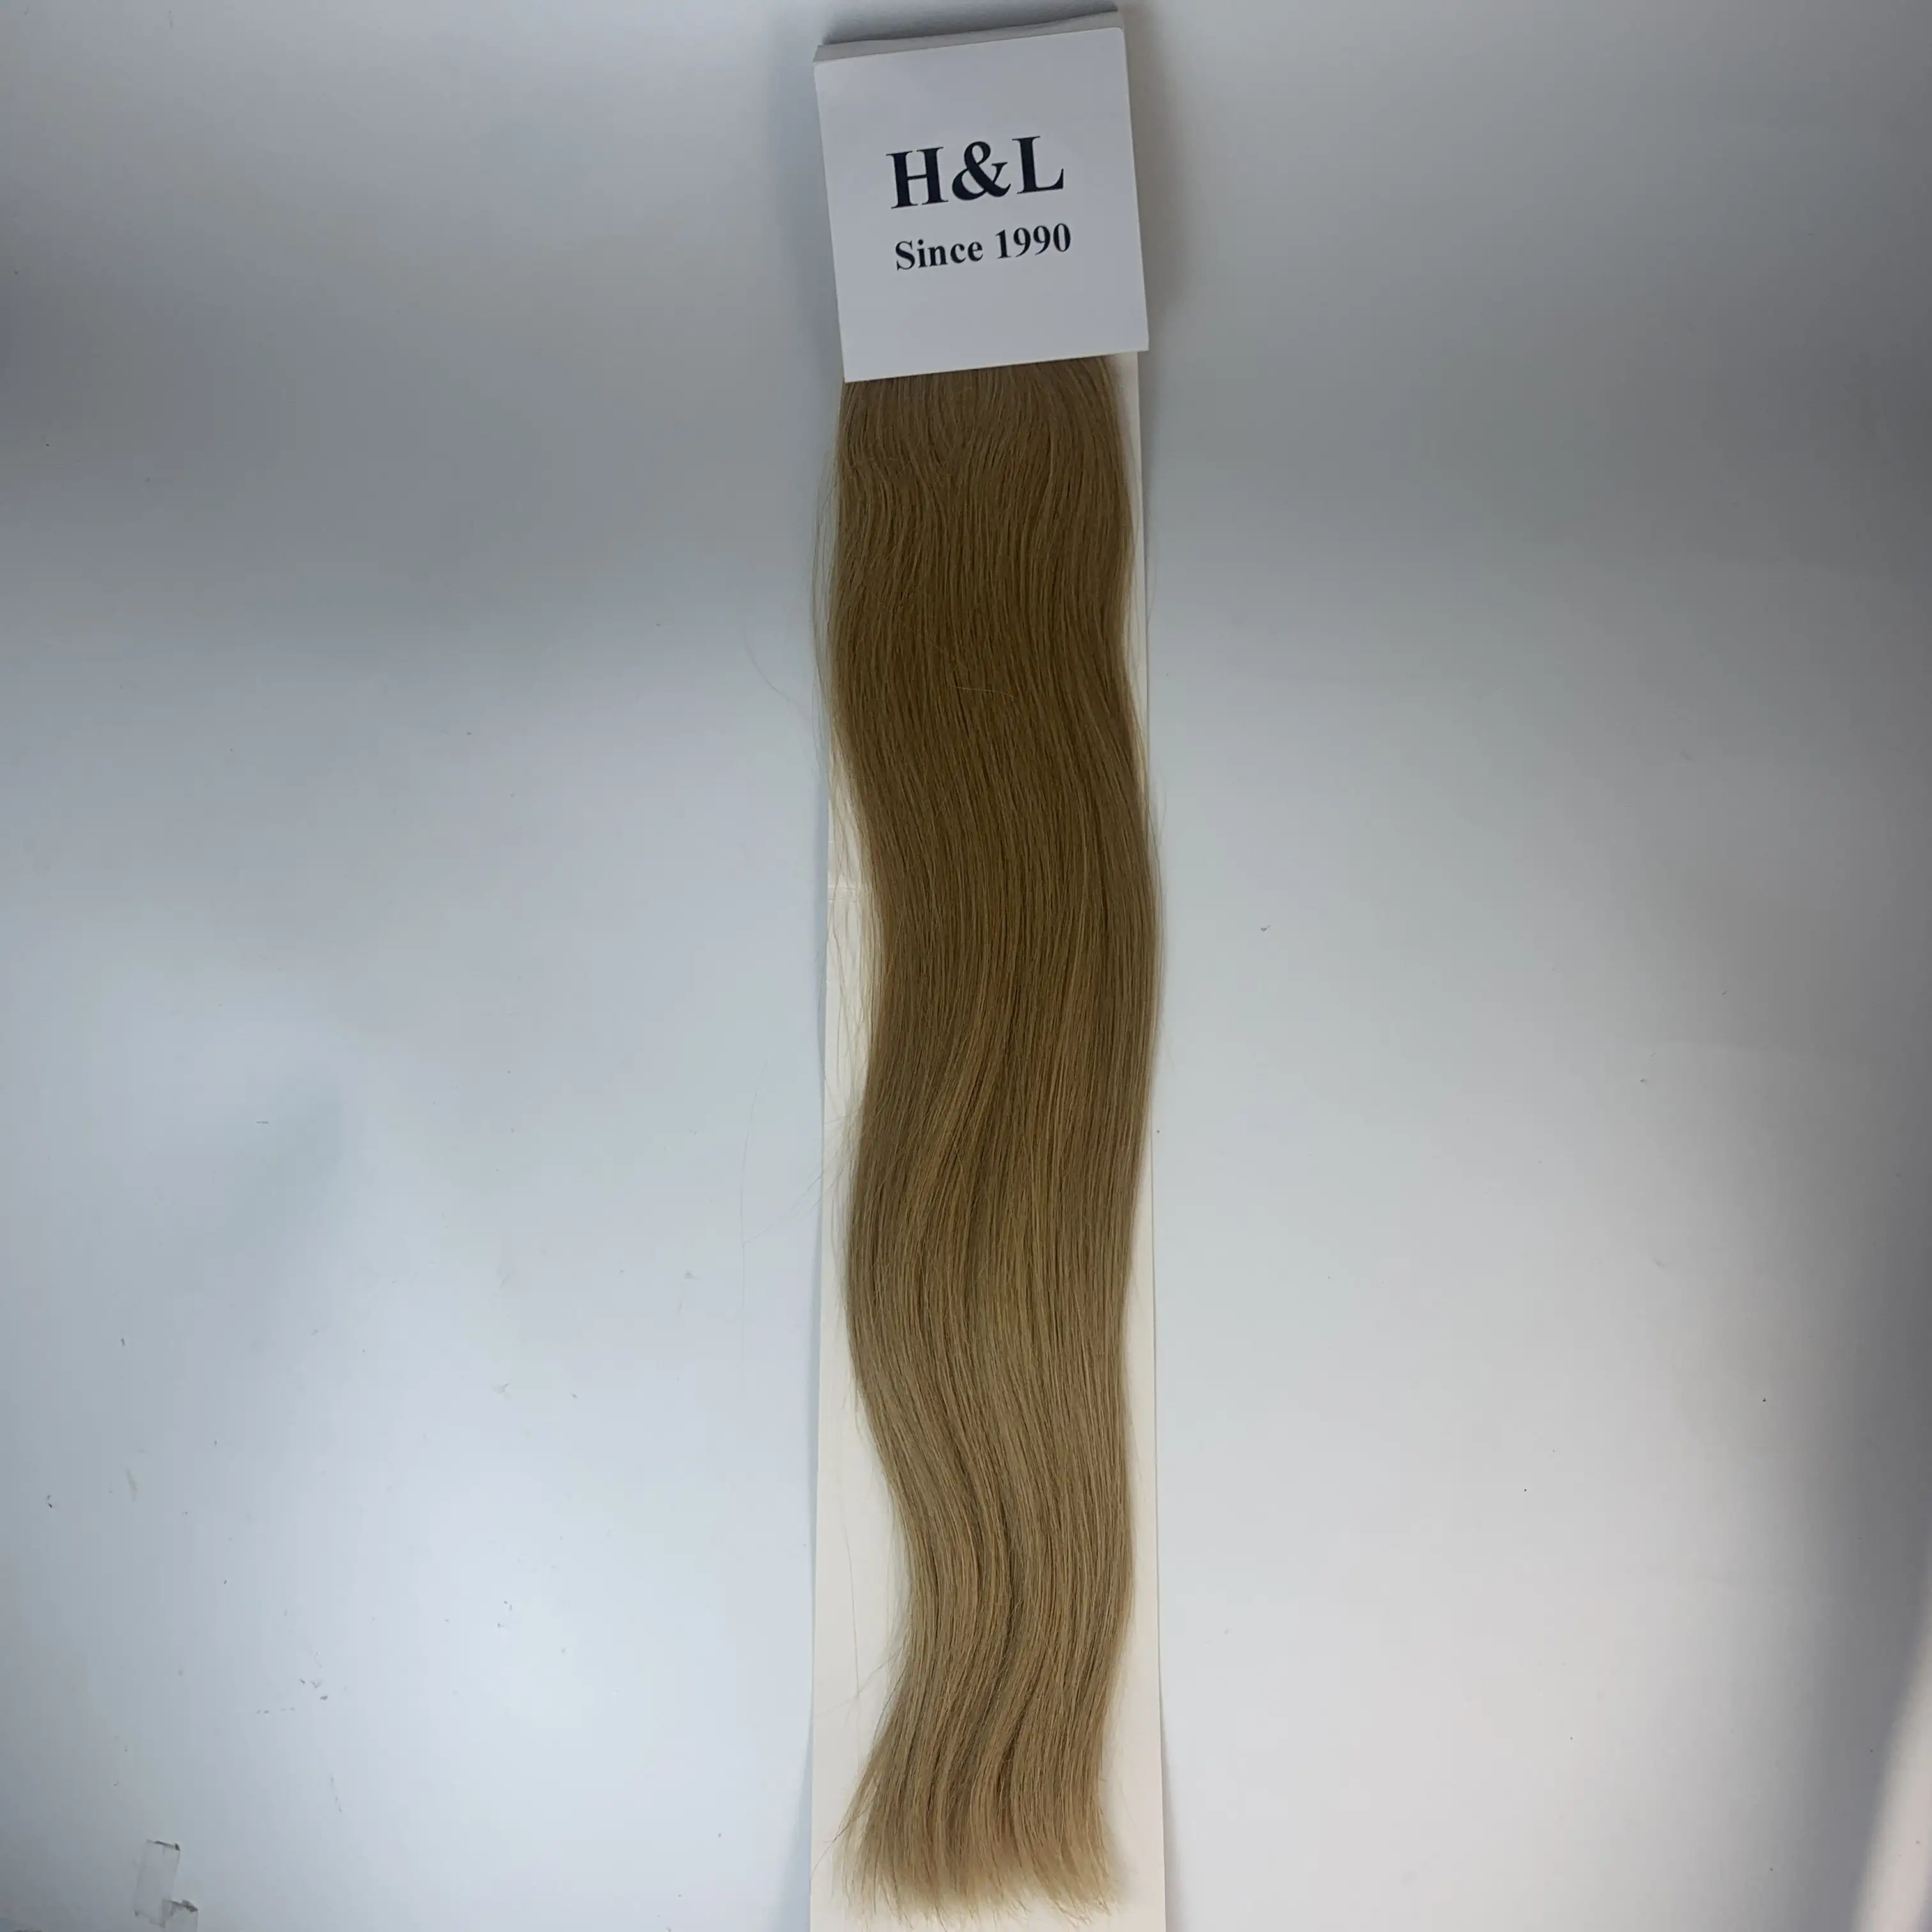 H & L-extensiones de cabello humano REMY, suministro de fábrica de calidad SUPERIOR, desde 1990